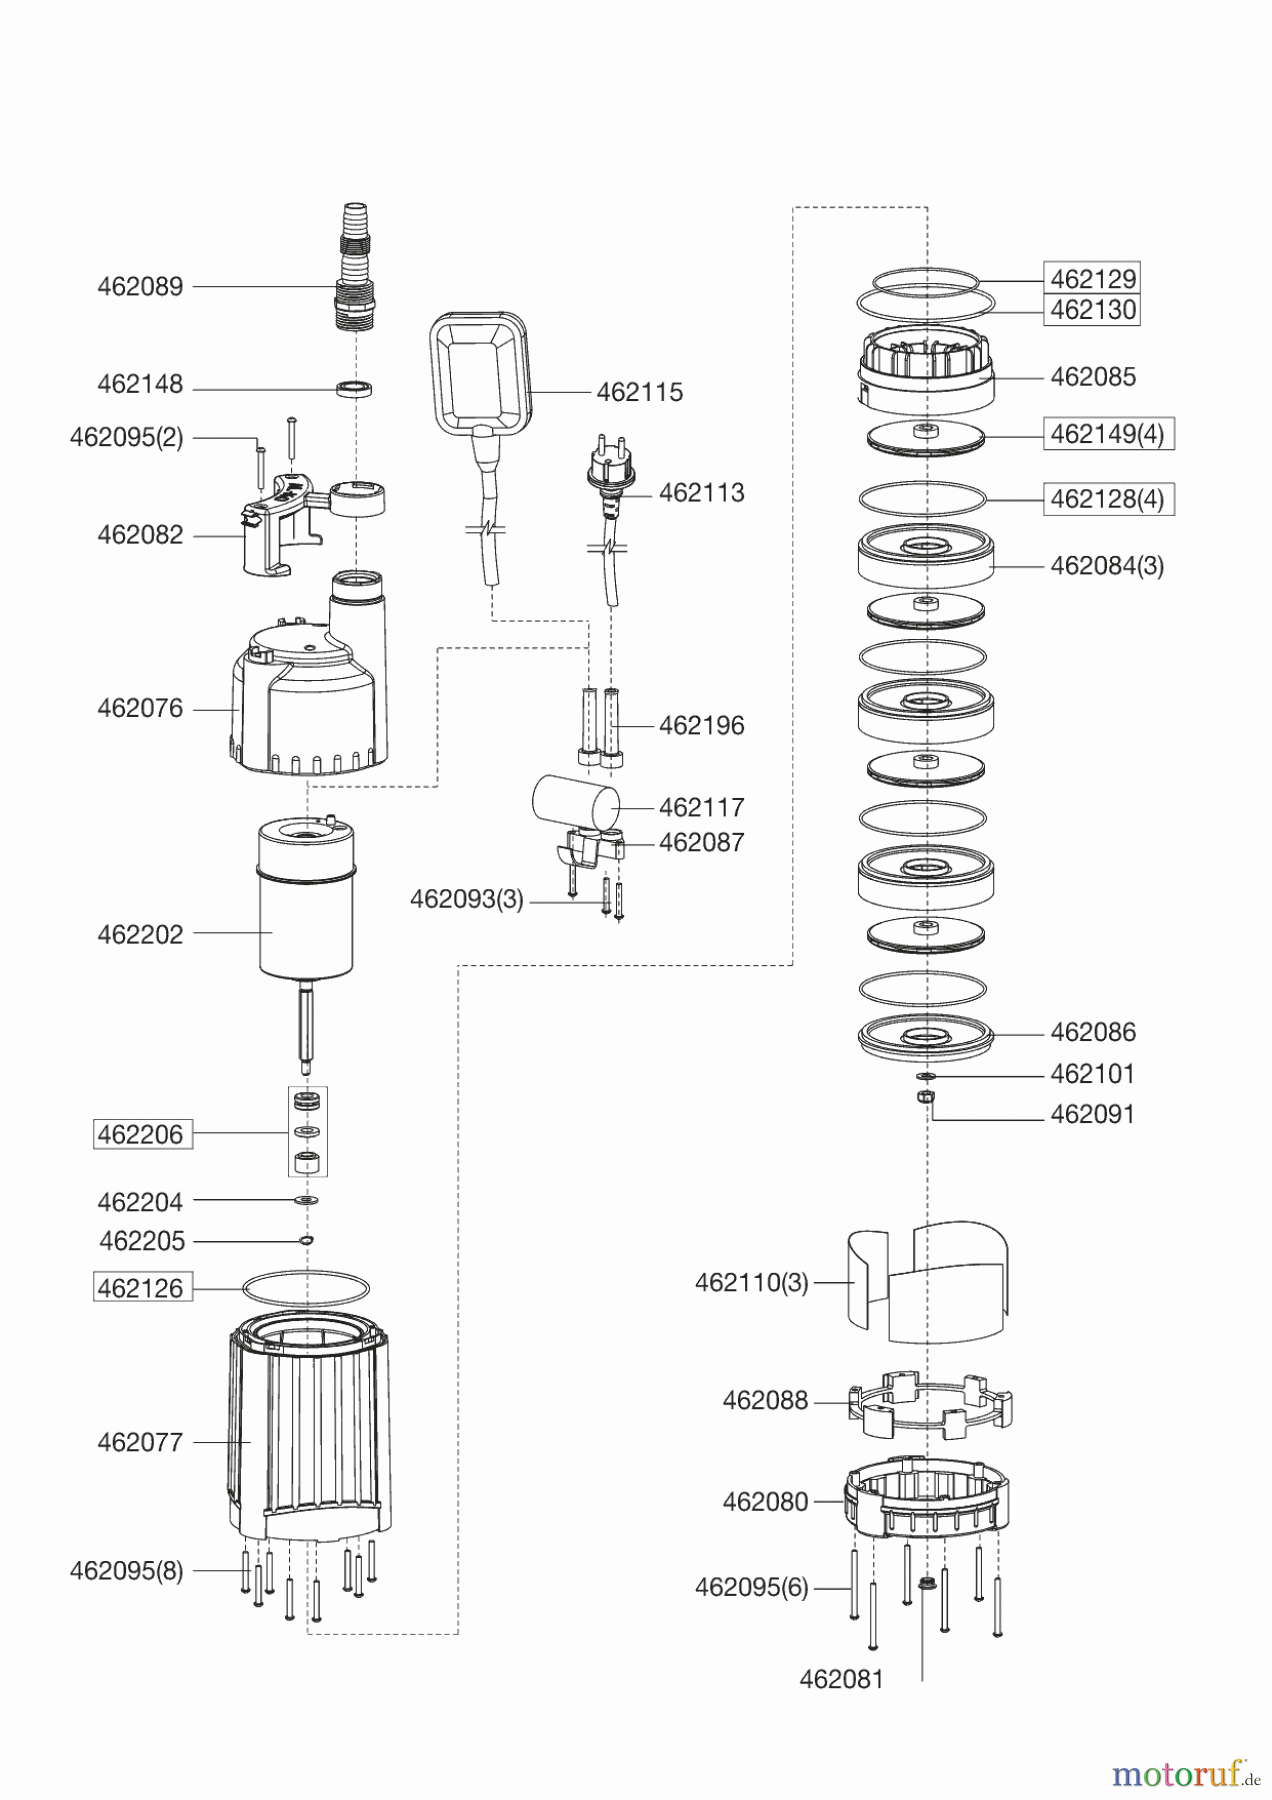  AL-KO Wassertechnik Tauchdruckpumpen TDS 1201/4  05/2012 Seite 1